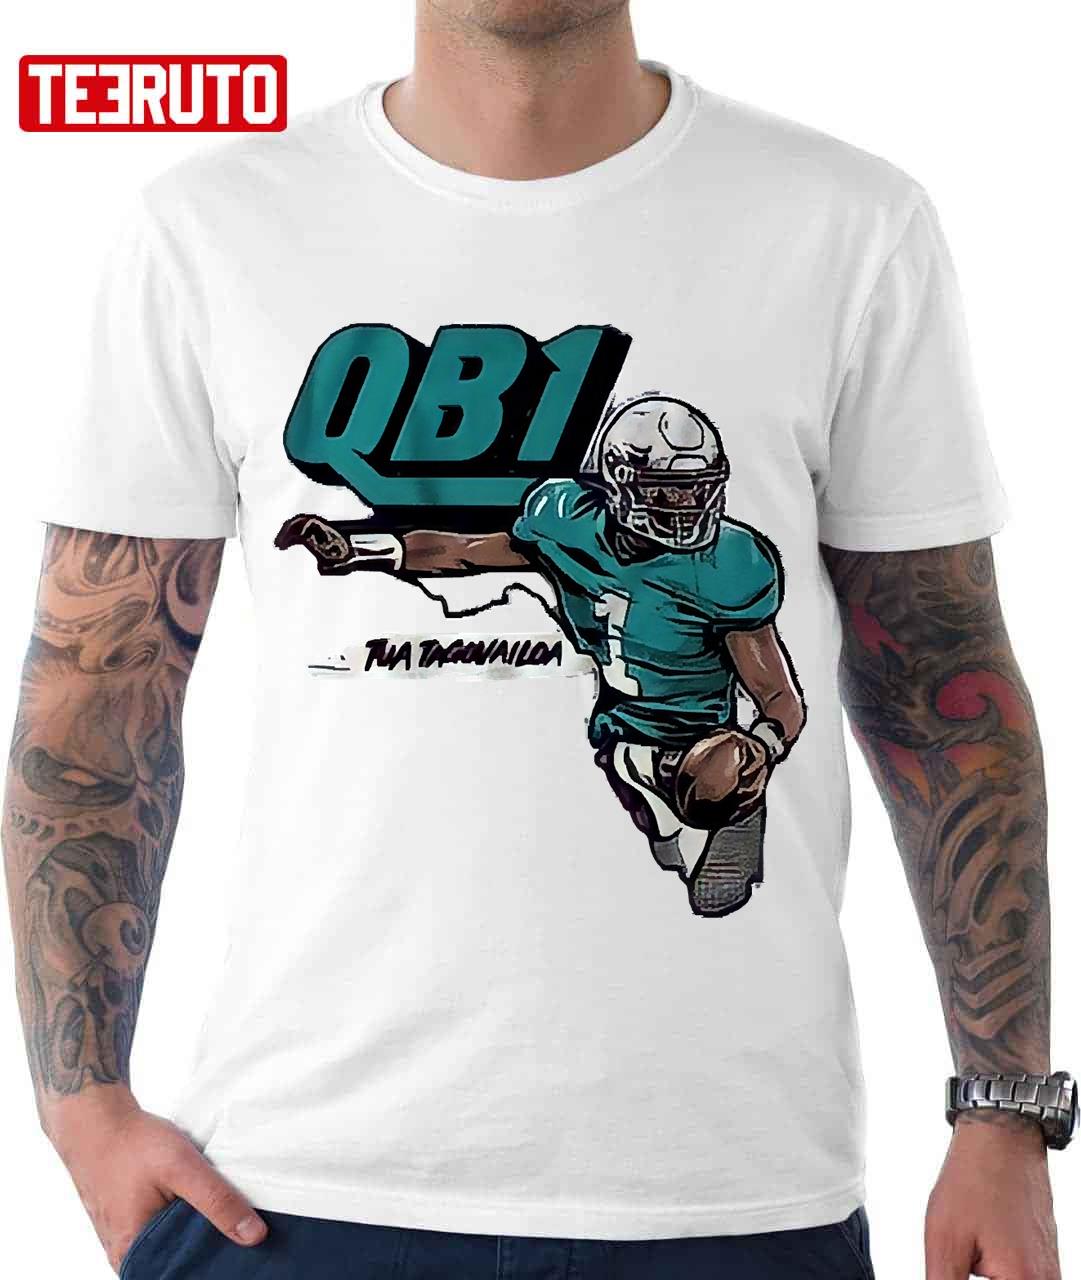  QB1 Tua Tagovailoa Miami Dolphins Unisex T-Shirt